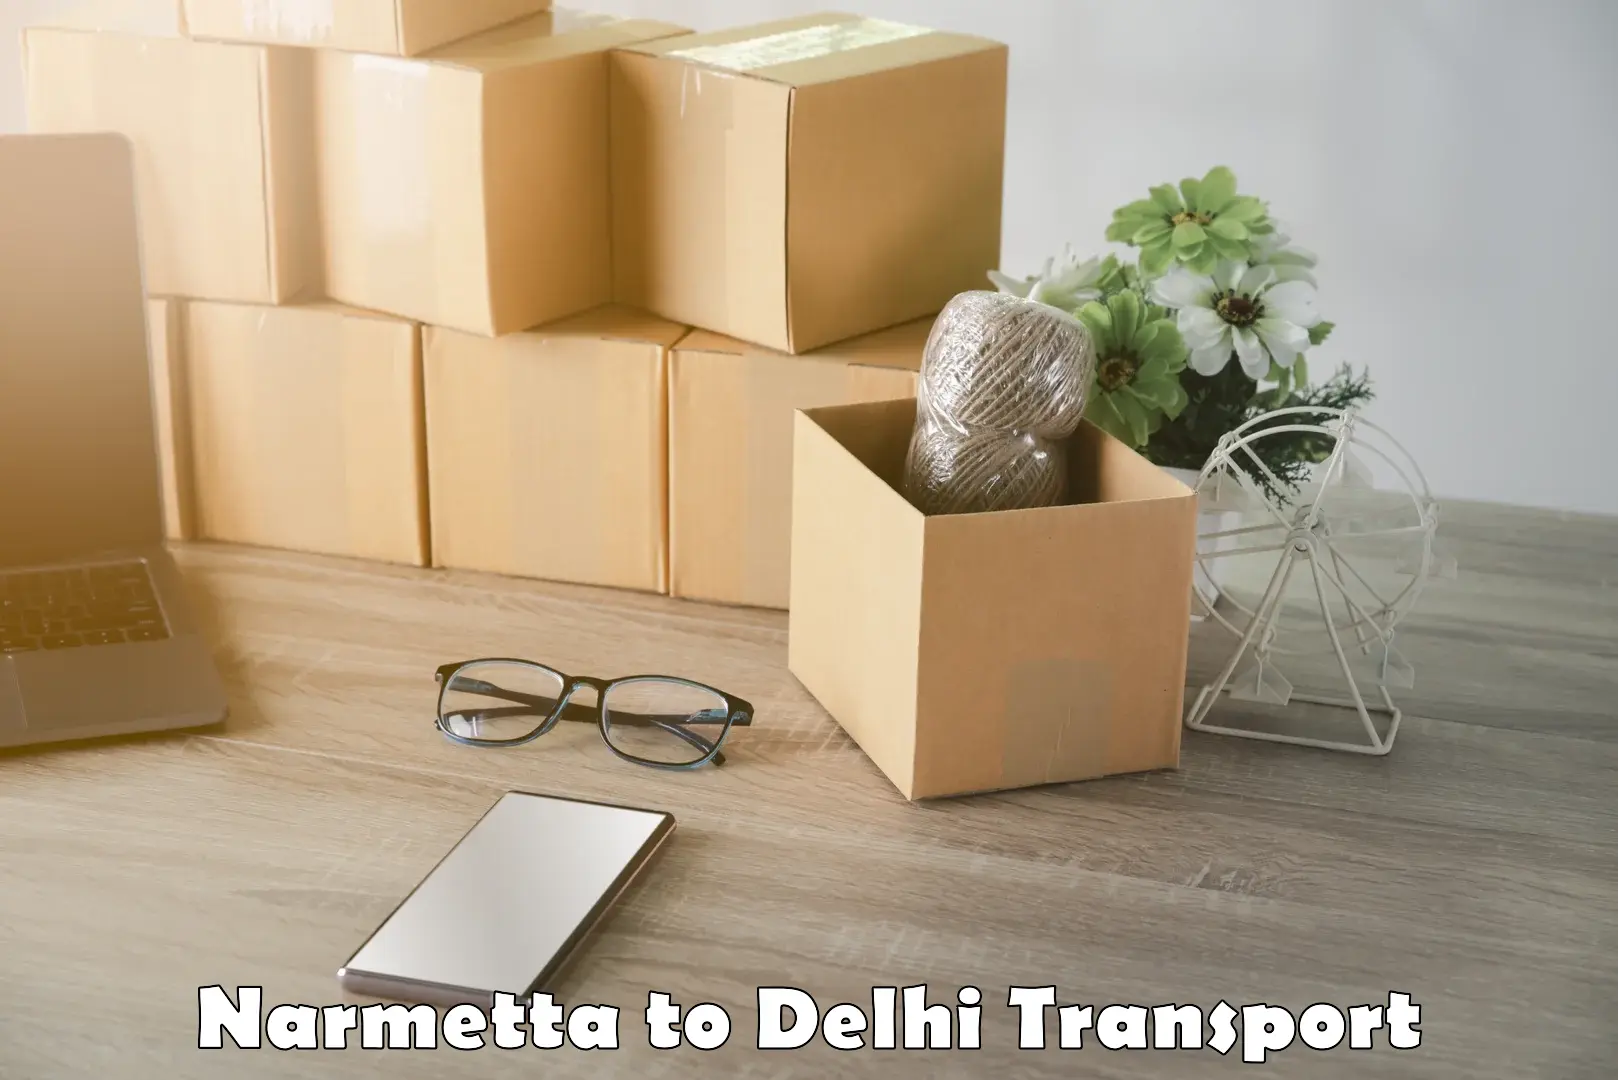 Daily transport service Narmetta to Delhi